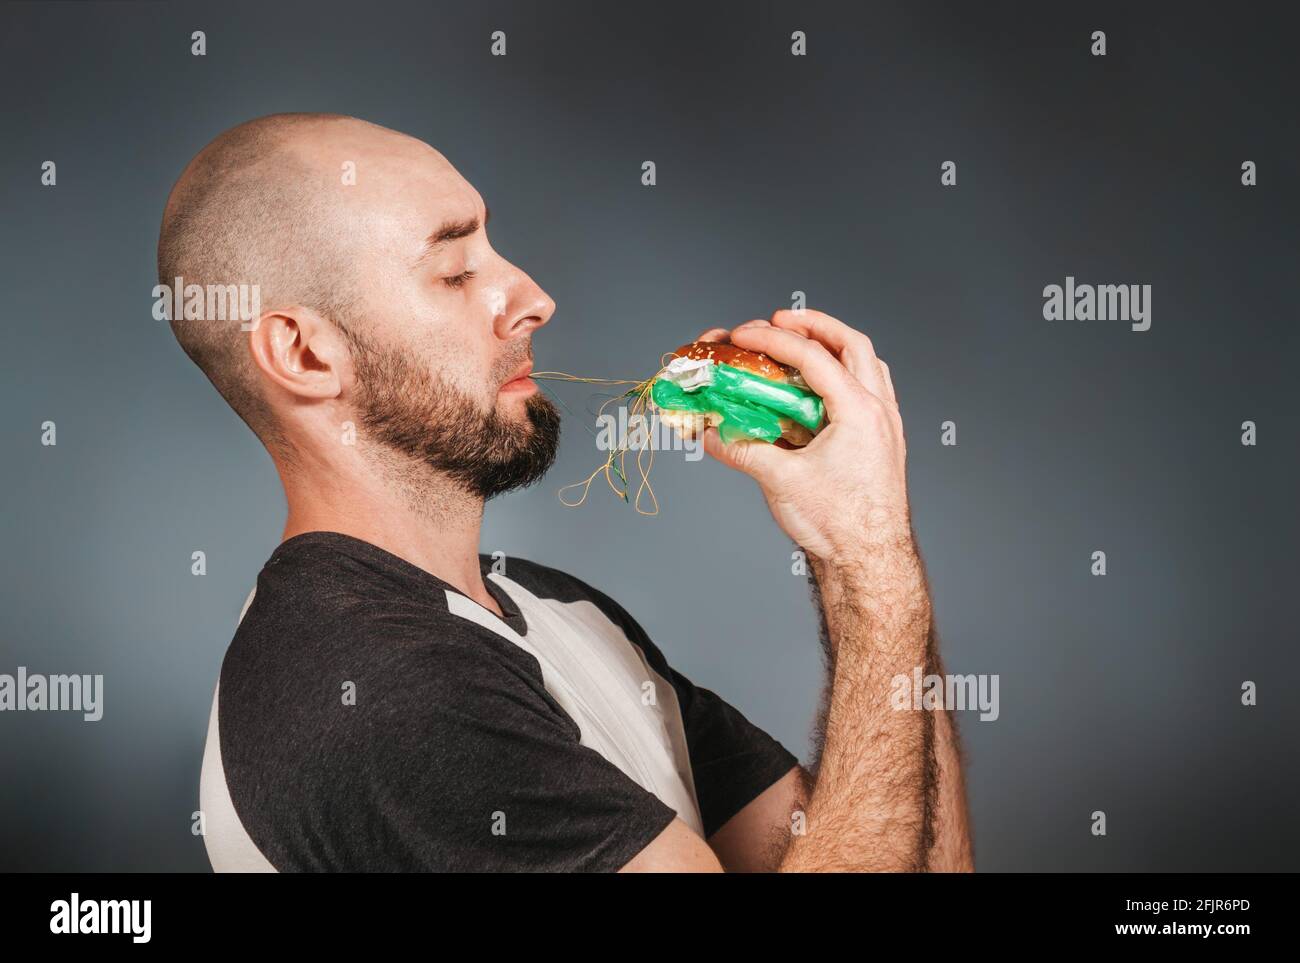 Umweltverschmutzung und Lebensmittelindustrie. Ein kahler Mann mit Bart hält mit beiden Händen einen Hamburger, aus dem sich eine Füllung aus Faden und Schutt zieht Stockfoto